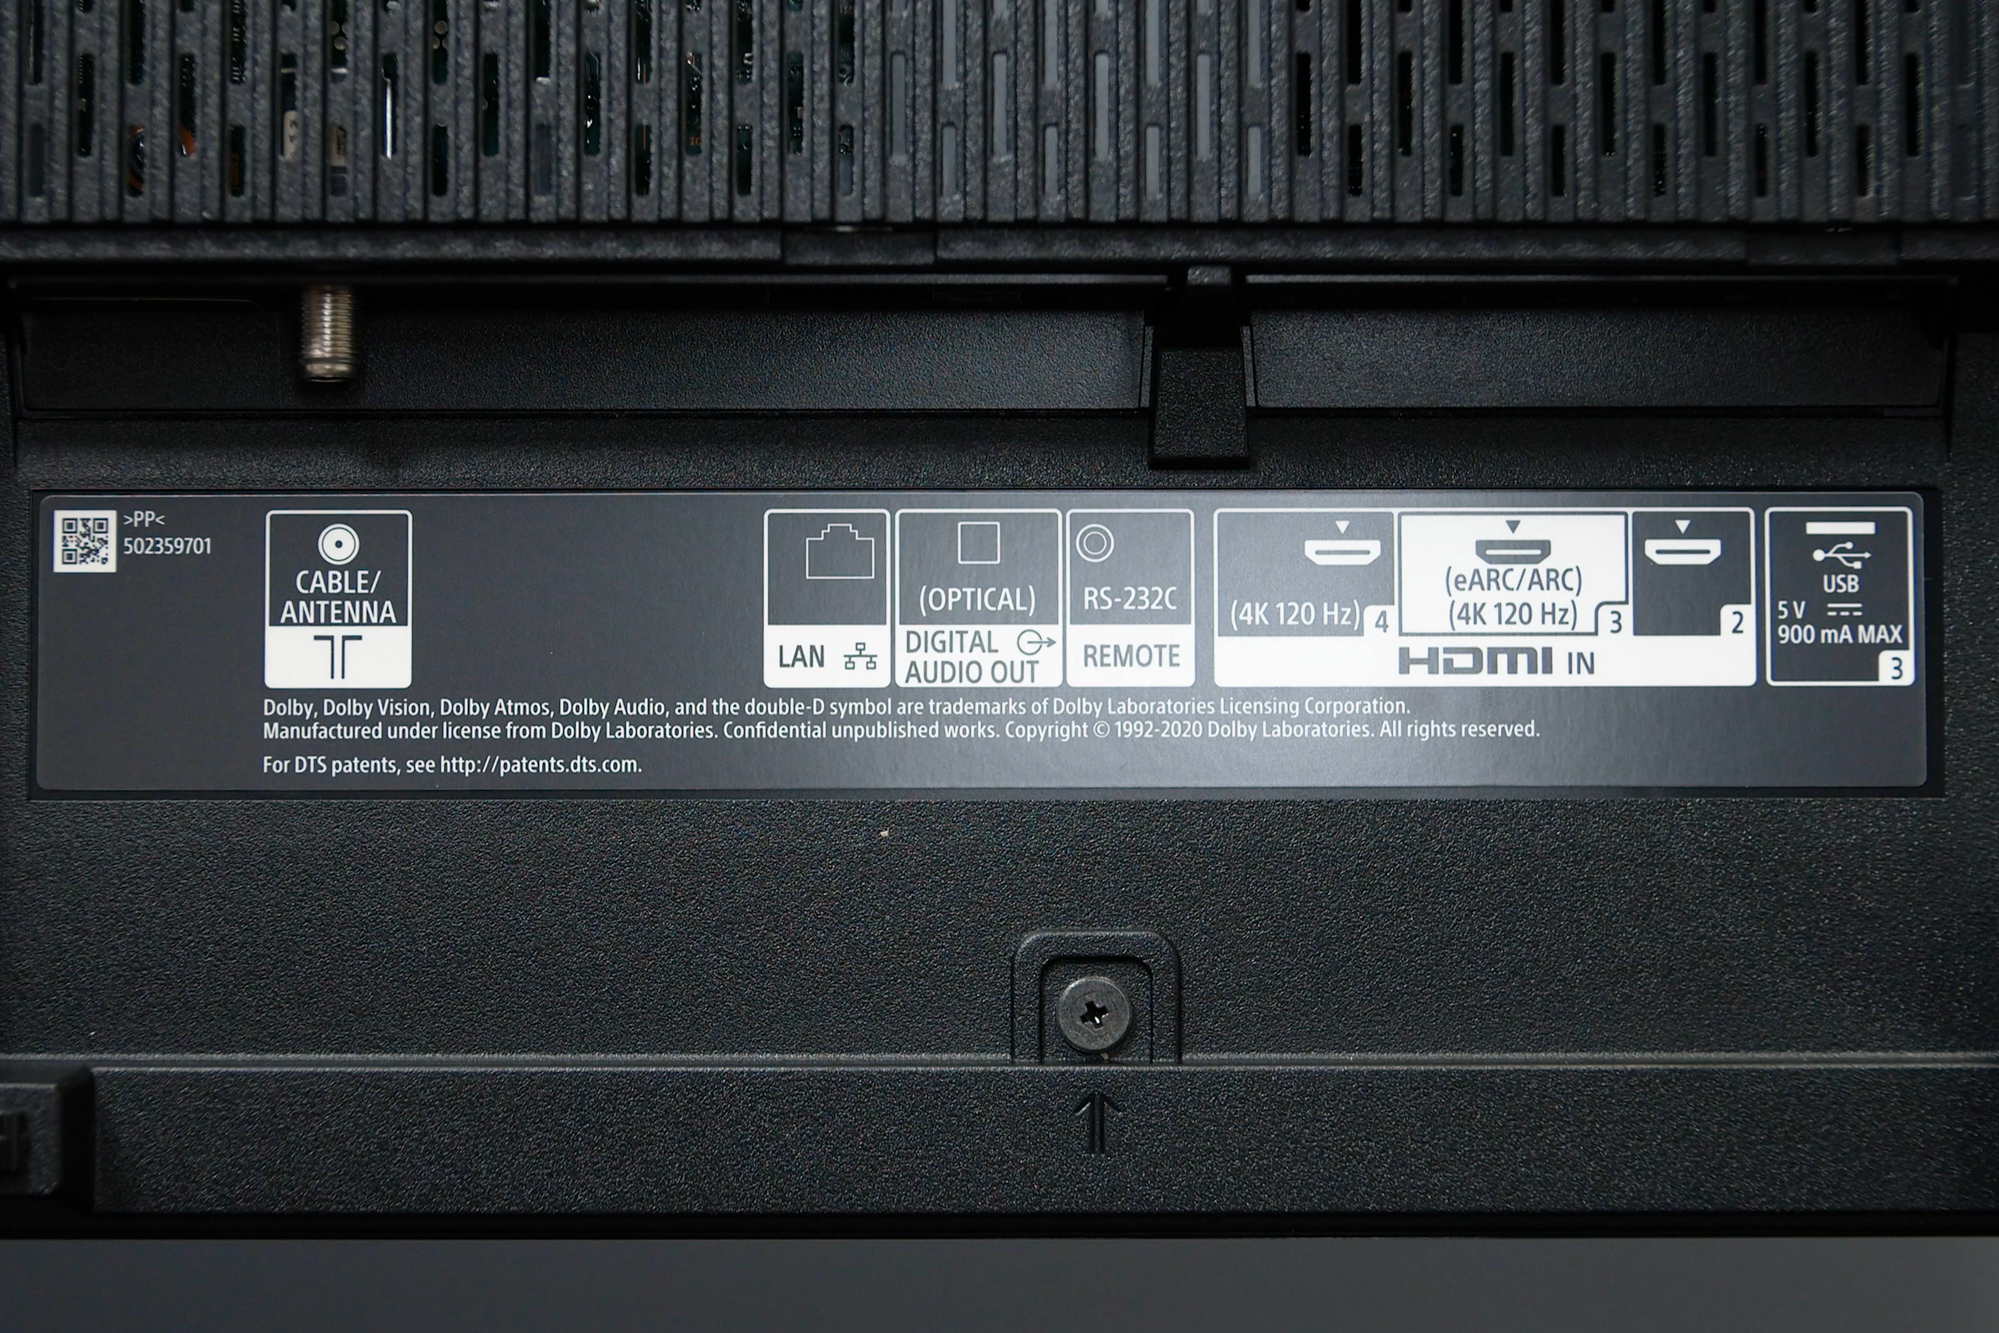 テレビ/映像機器 テレビ Sony Bravia XR A90J 4K HDR OLED TV Review | Digital Trends